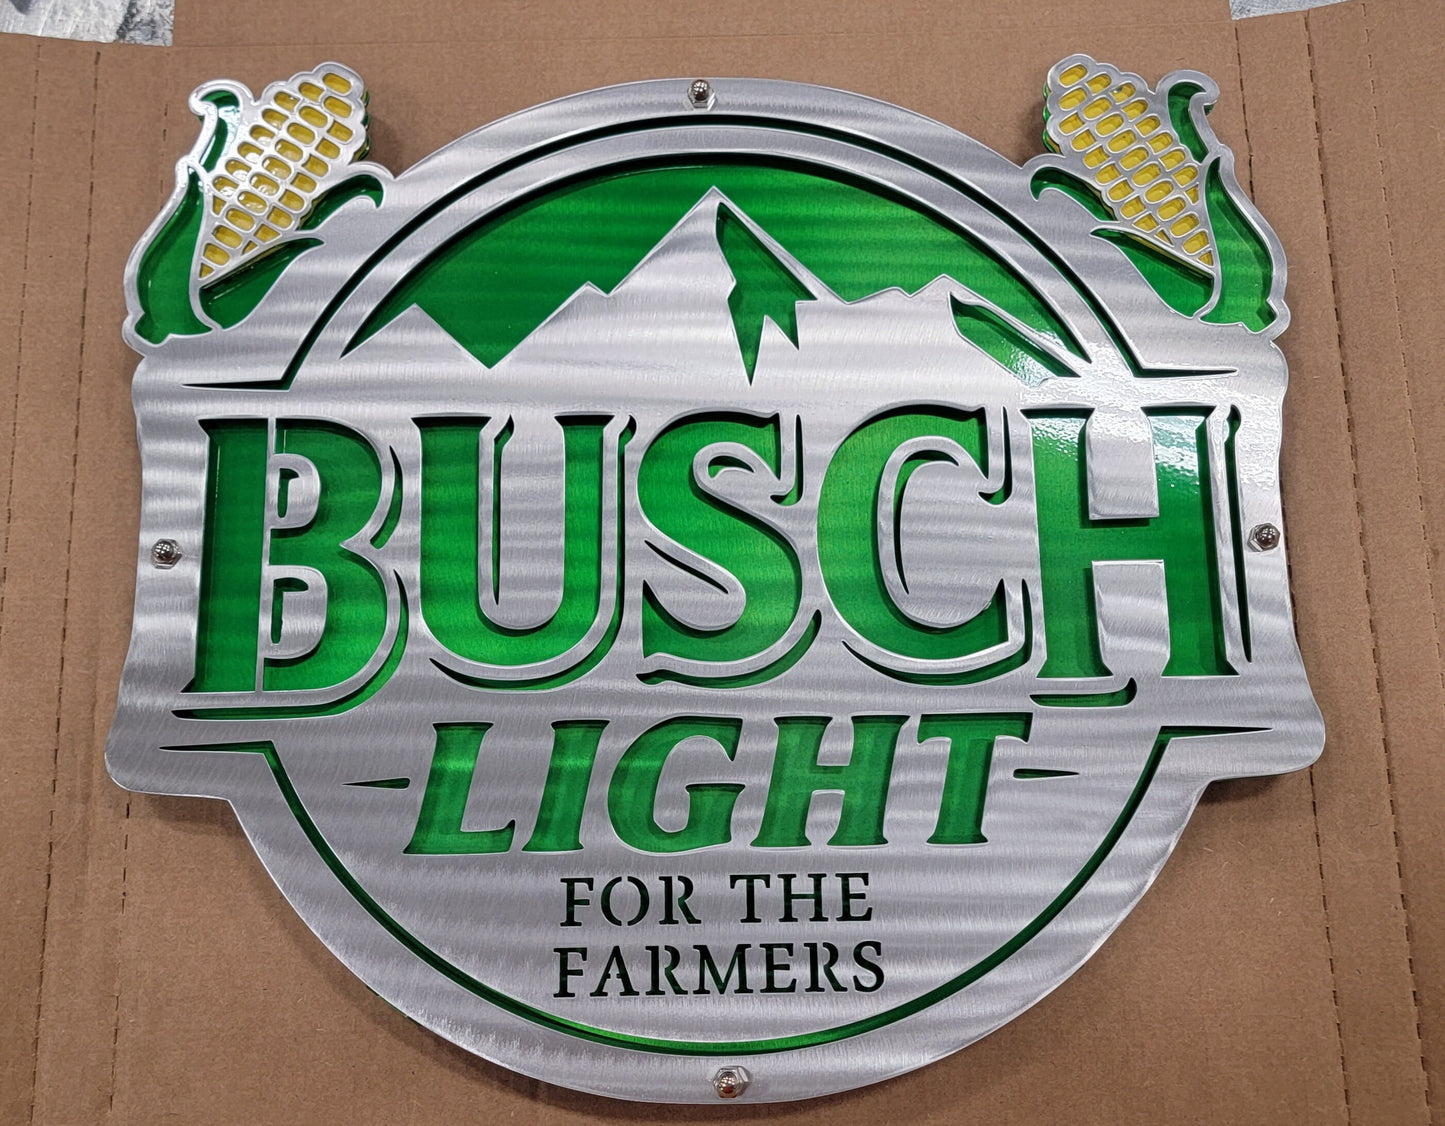 Busch Light (Reg, Apple, Farmers) Metal Art Sign